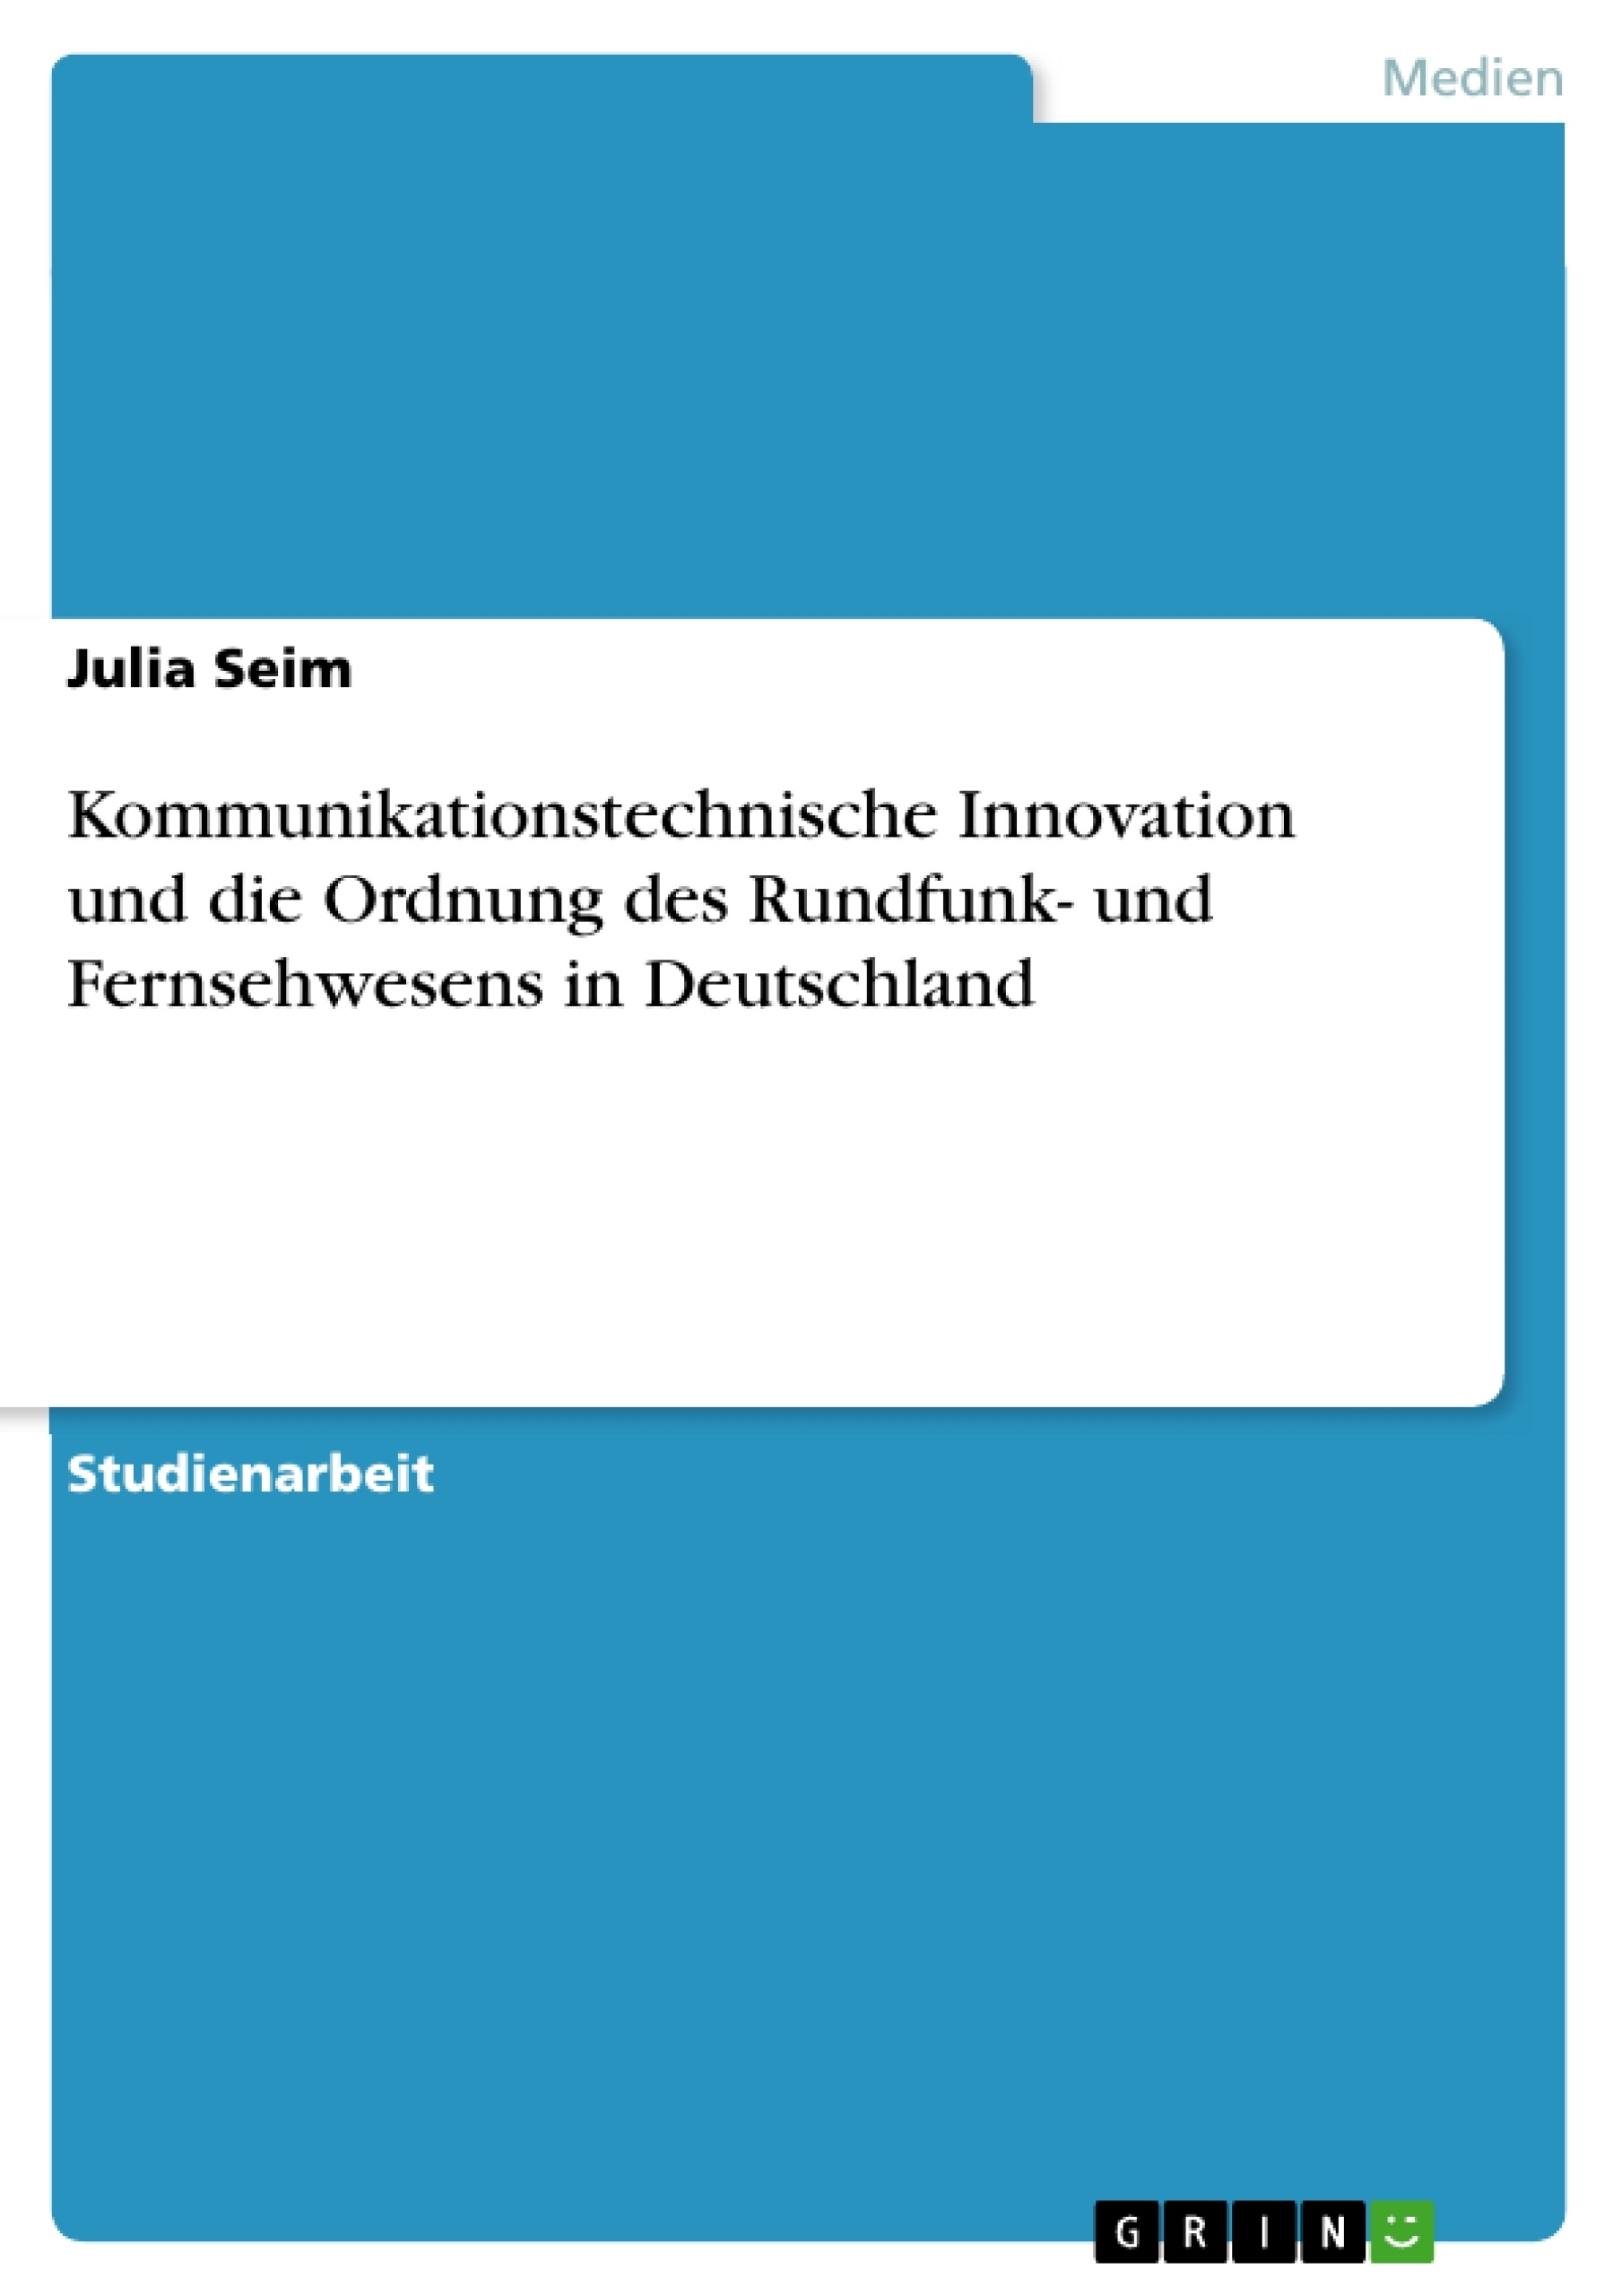 Title: Kommunikationstechnische Innovation und die Ordnung des Rundfunk- und Fernsehwesens in Deutschland